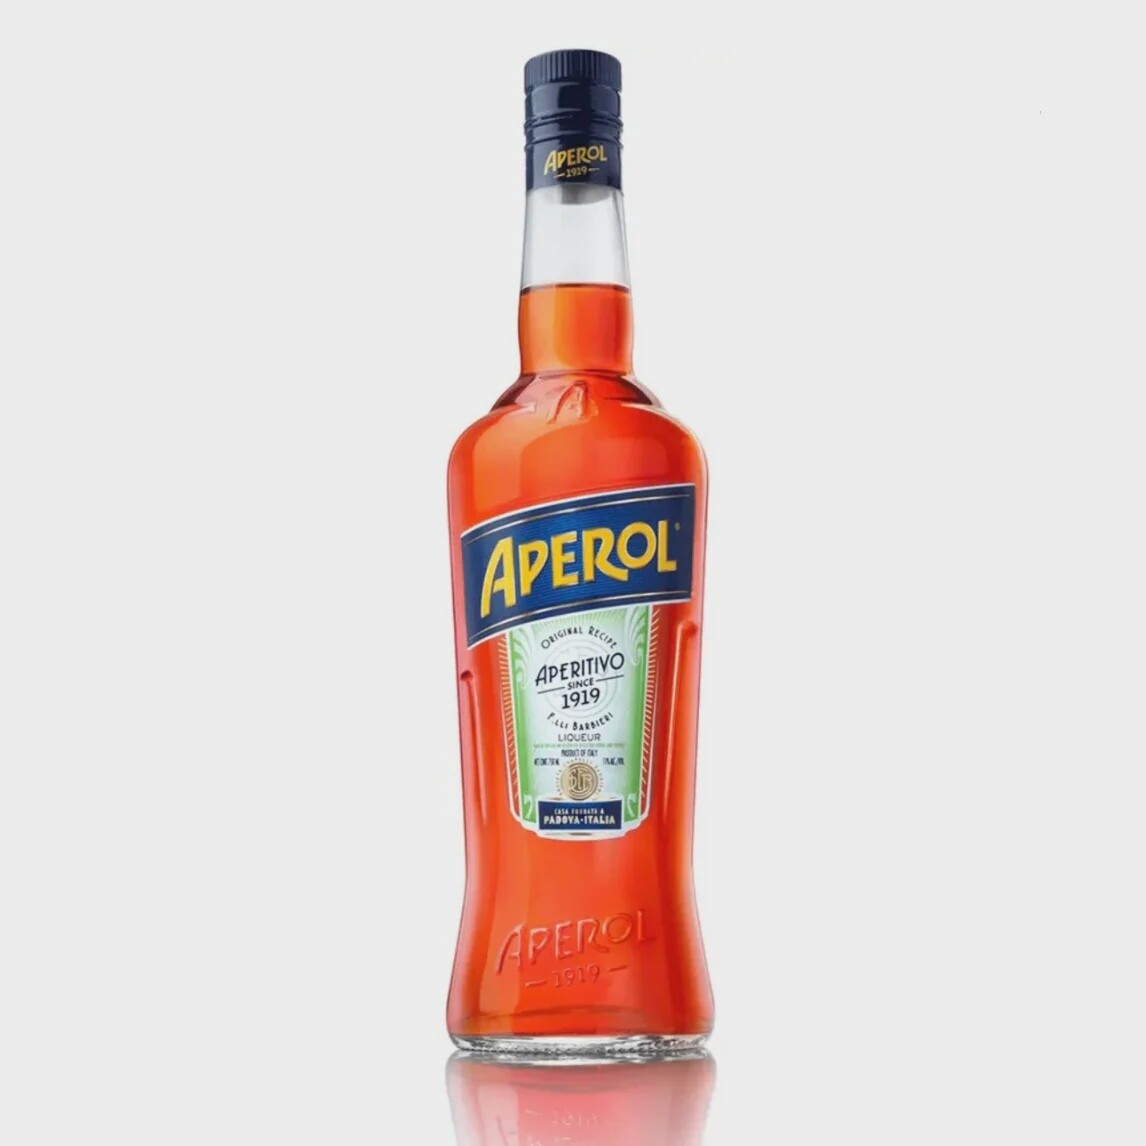 Aperol (1L)